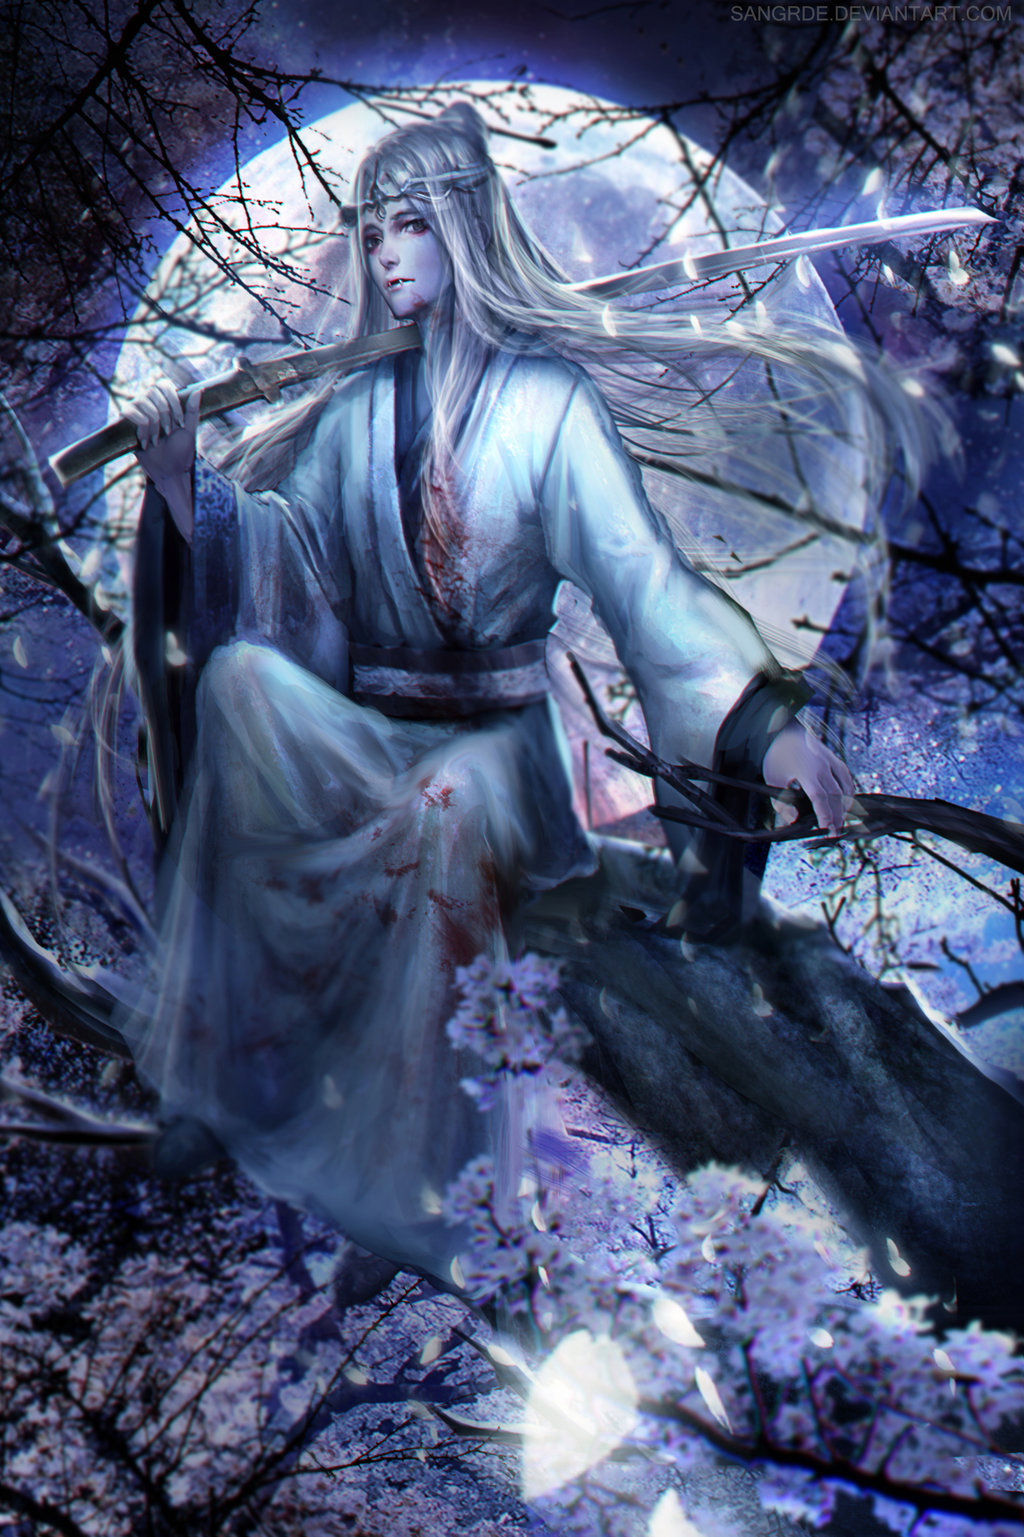 Фото Белокурый вампир в окровавленном кимоно с катаной в руке сидит на ветке цветущей сакуры на фоне полной луны, by Sangrde